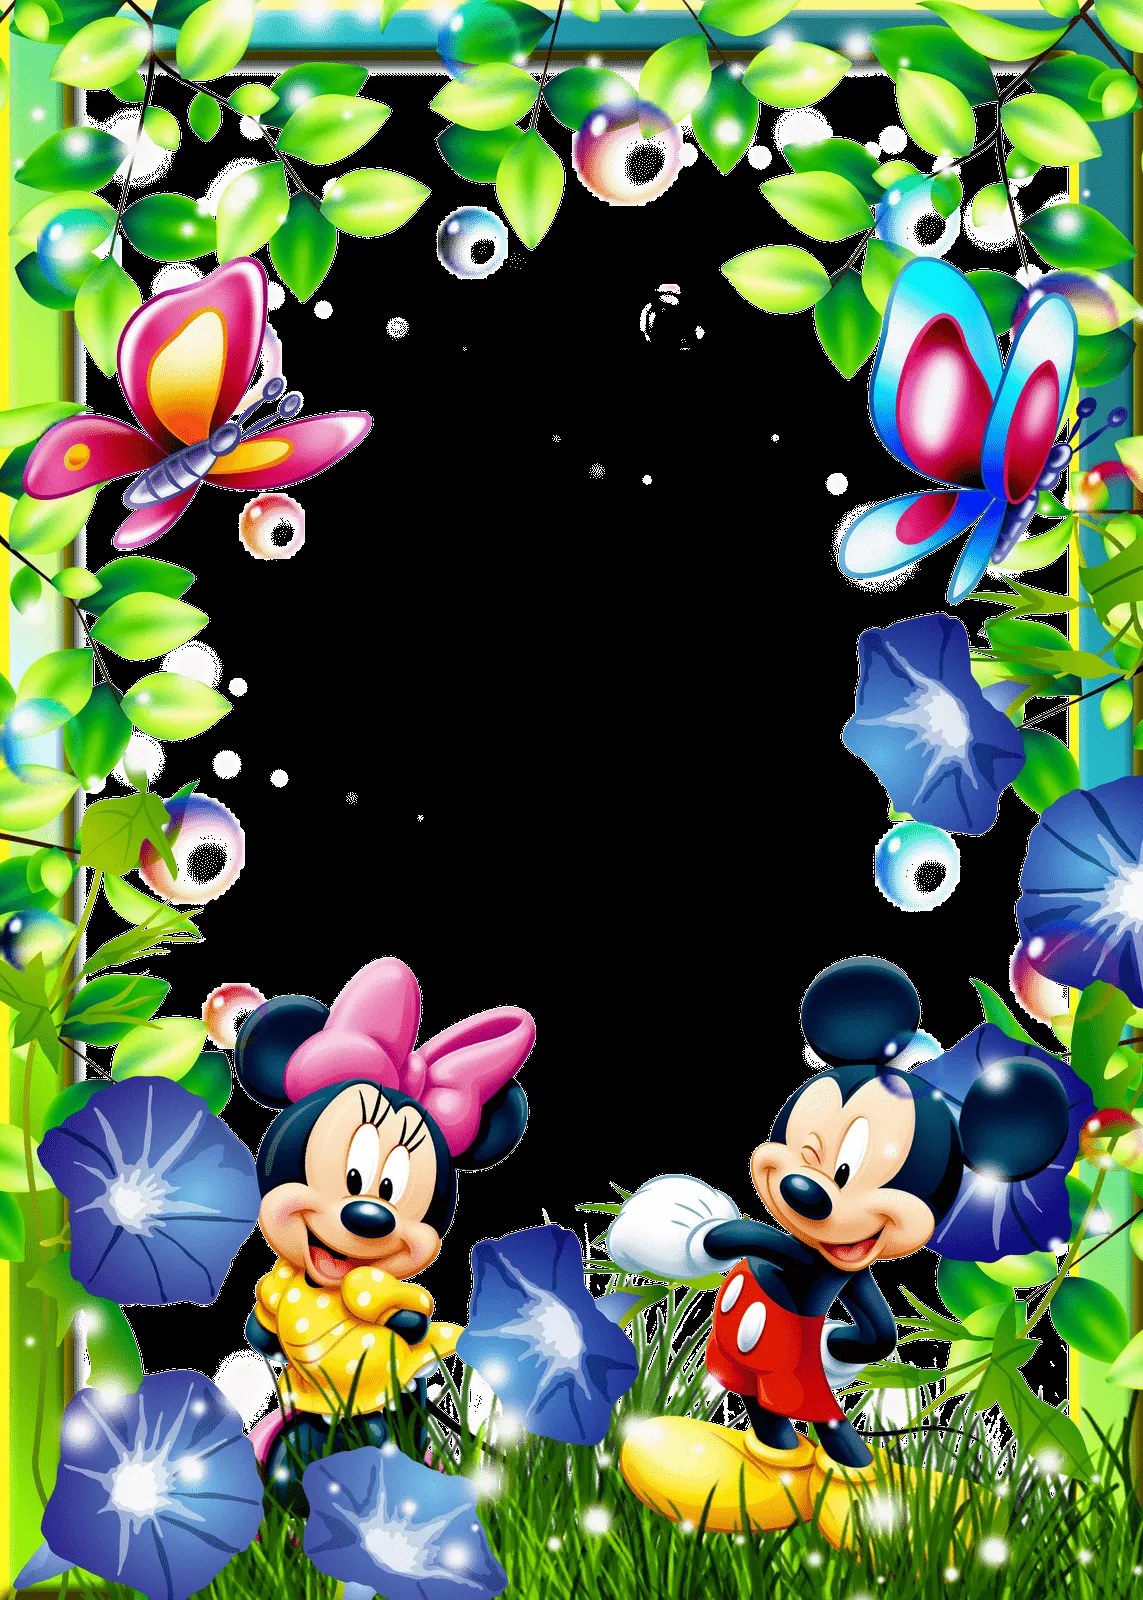 Etiquetas: marcos para fotos de Mickey , marcos para fotos infantiles